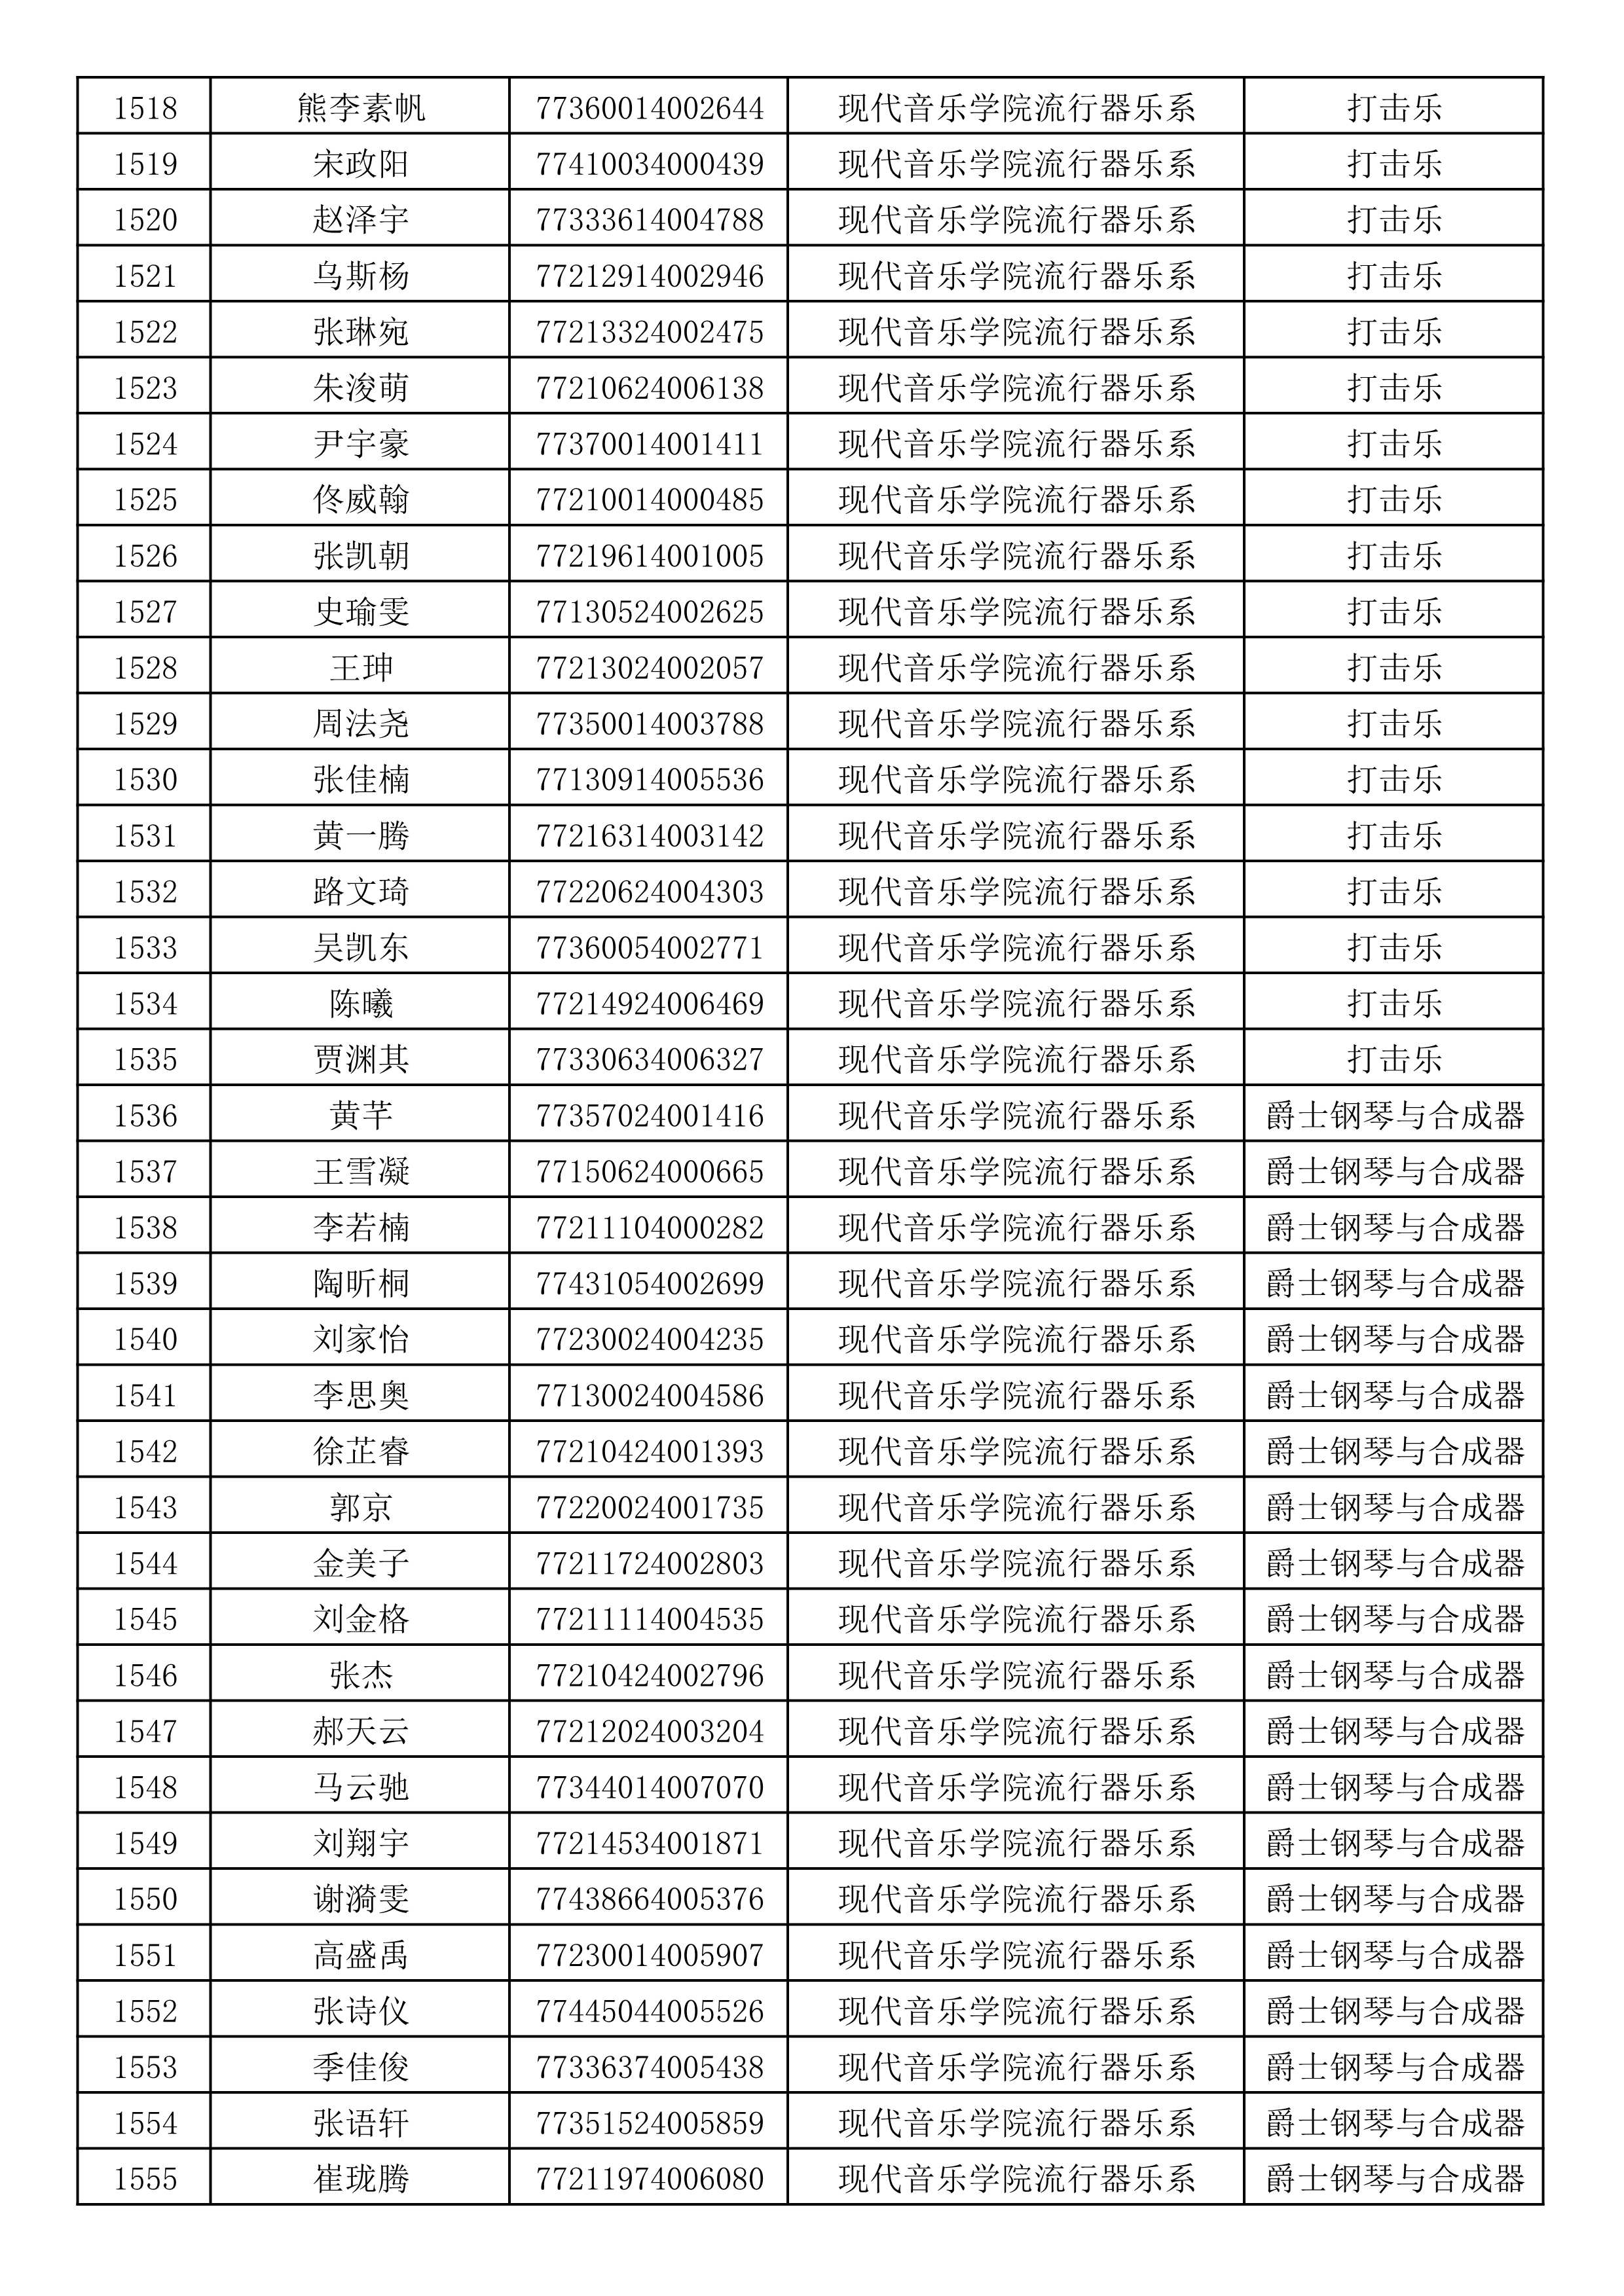 沈阳音乐学院2019年本科招生考试初试合格名单_41.jpg